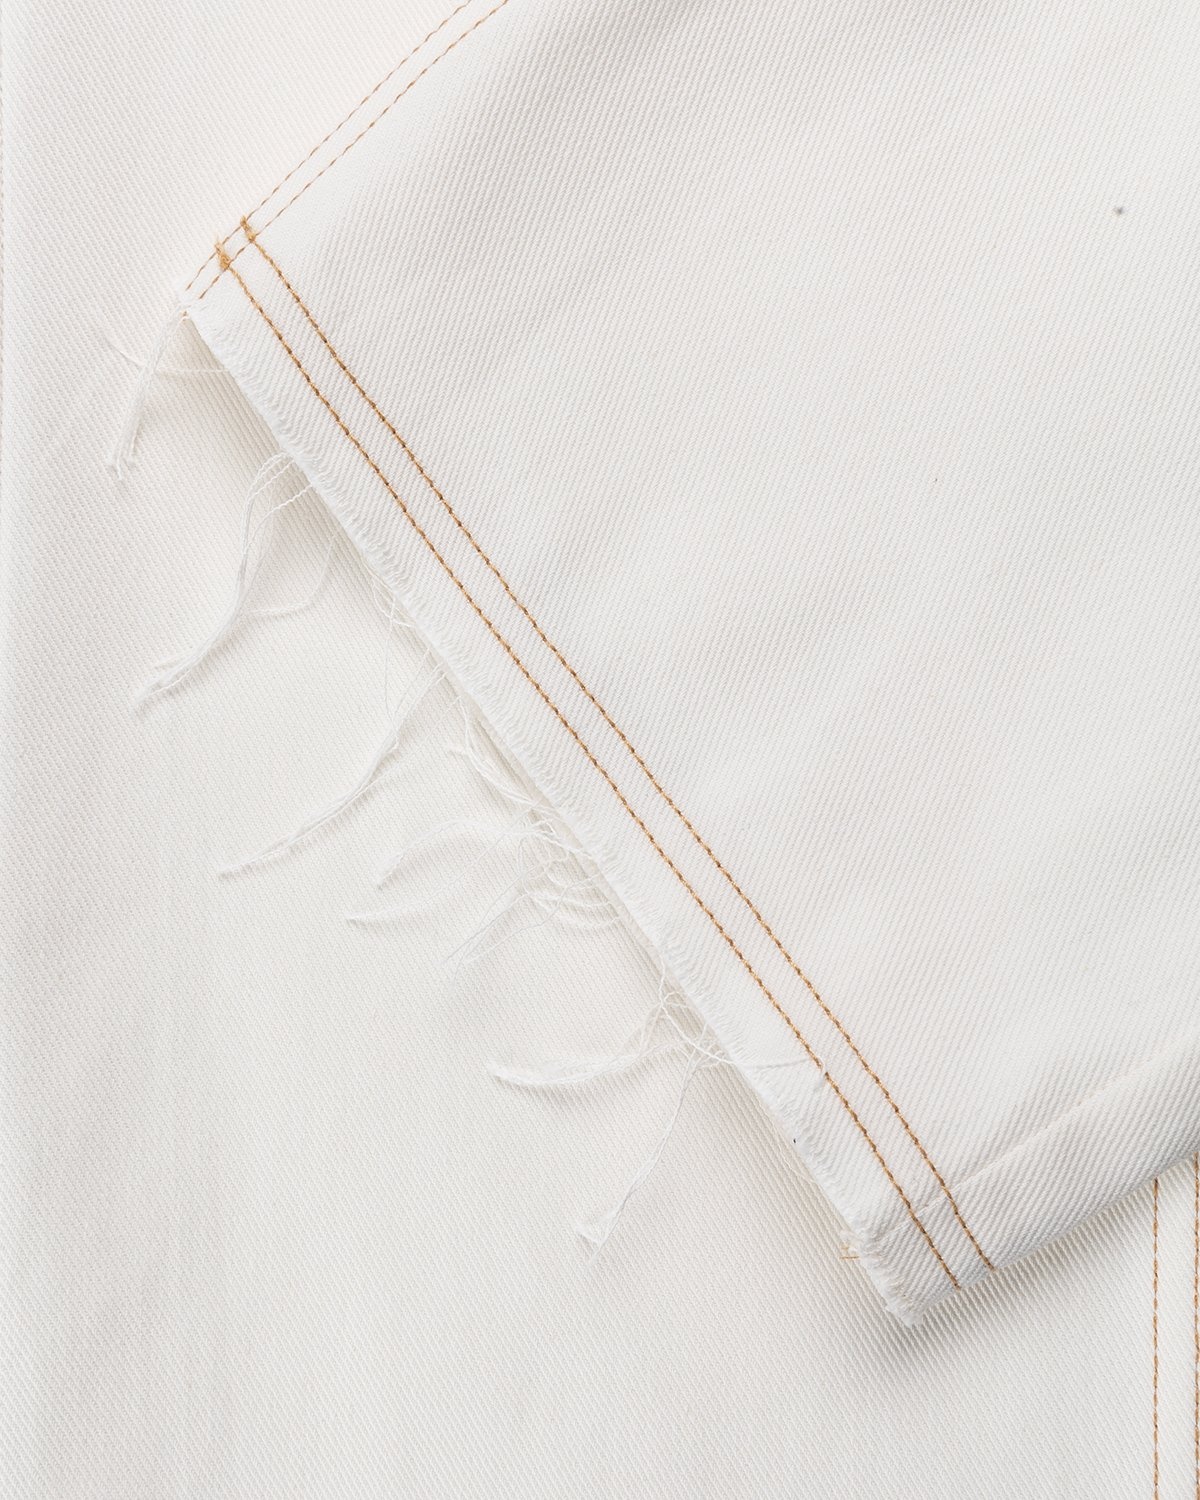 Loewe – Paula's Ibiza Boot Cut Denim Trousers White - Denim - White - Image 5